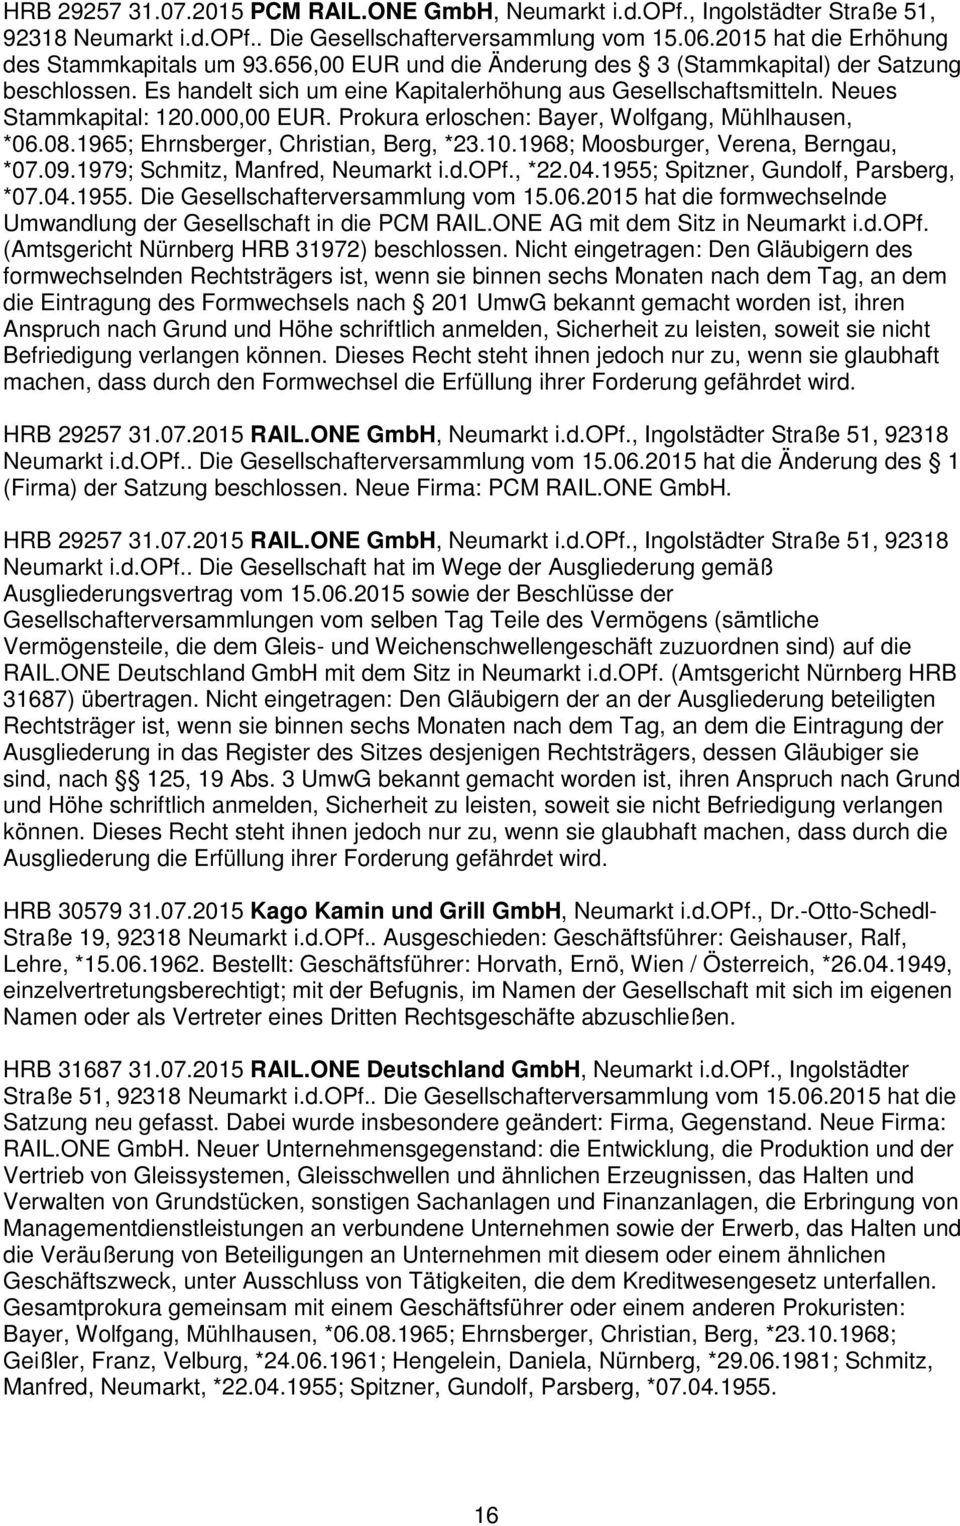 Prokura erloschen: Bayer, Wolfgang, Mühlhausen, *06.08.1965; Ehrnsberger, Christian, Berg, *23.10.1968; Moosburger, Verena, Berngau, *07.09.1979; Schmitz, Manfred, Neumarkt i.d.opf., *22.04.